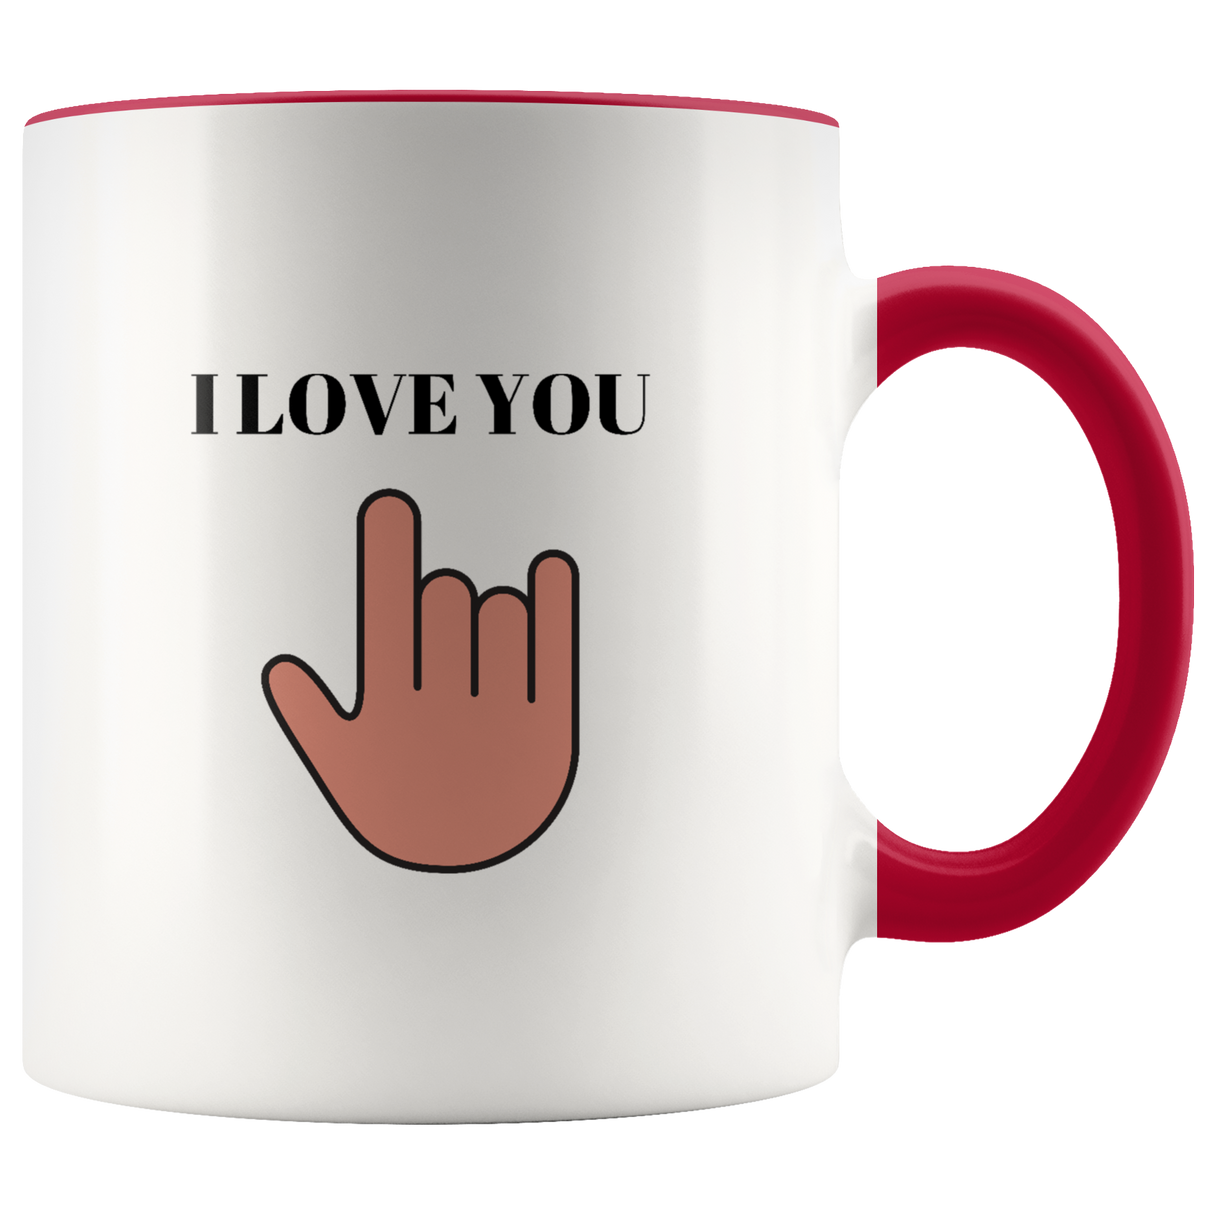 I Love You Mug Ceramic Accent Mug - Red | Shop Sassy Chick